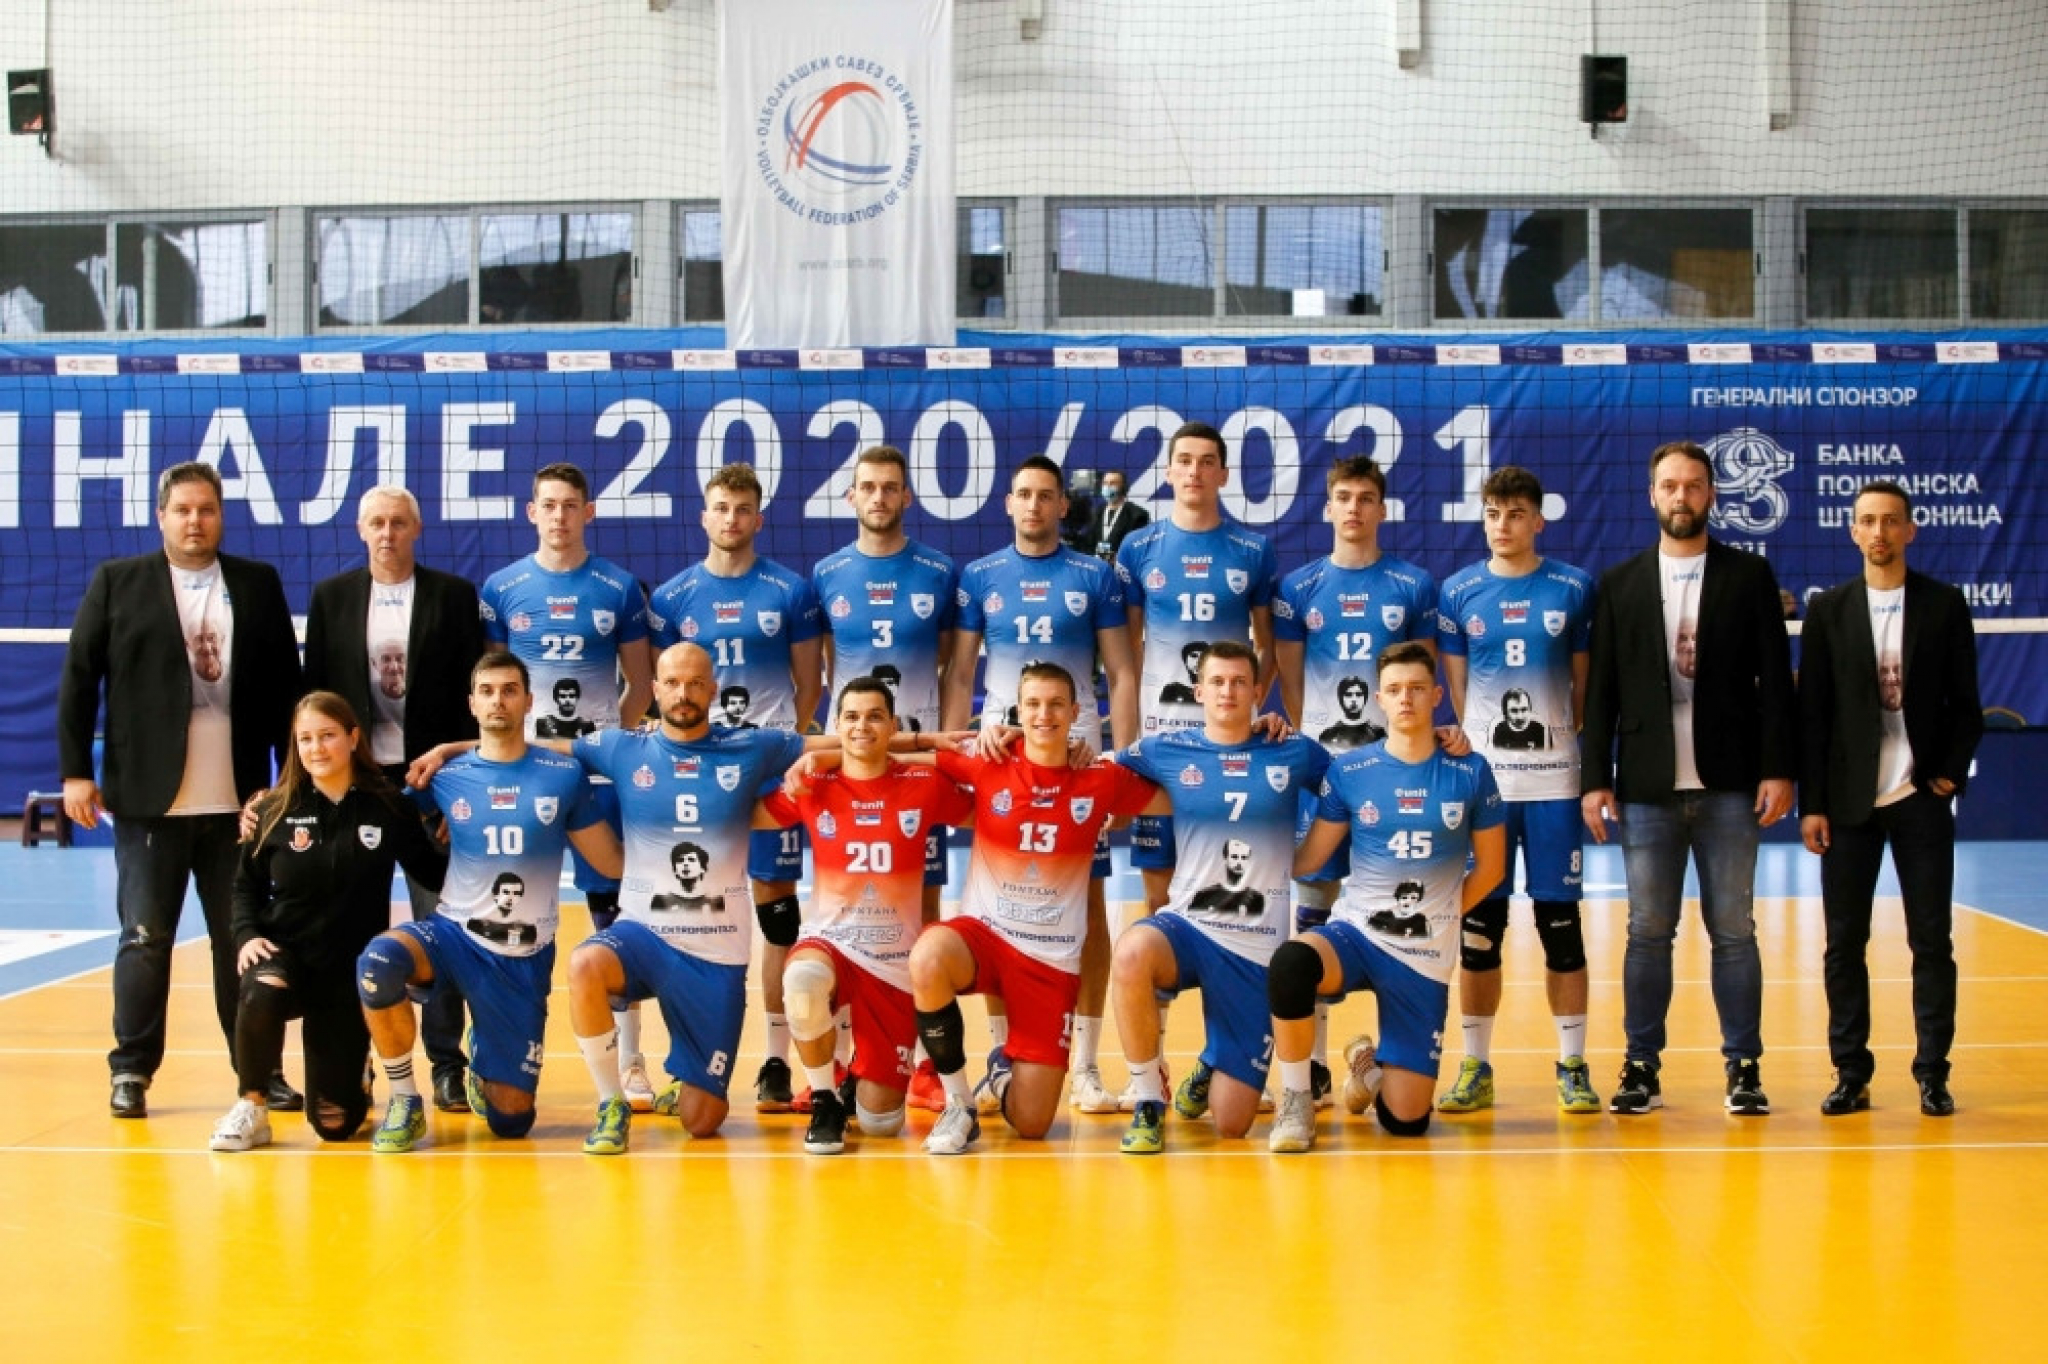 finale Kupa Srbije Radnički - Ribnica